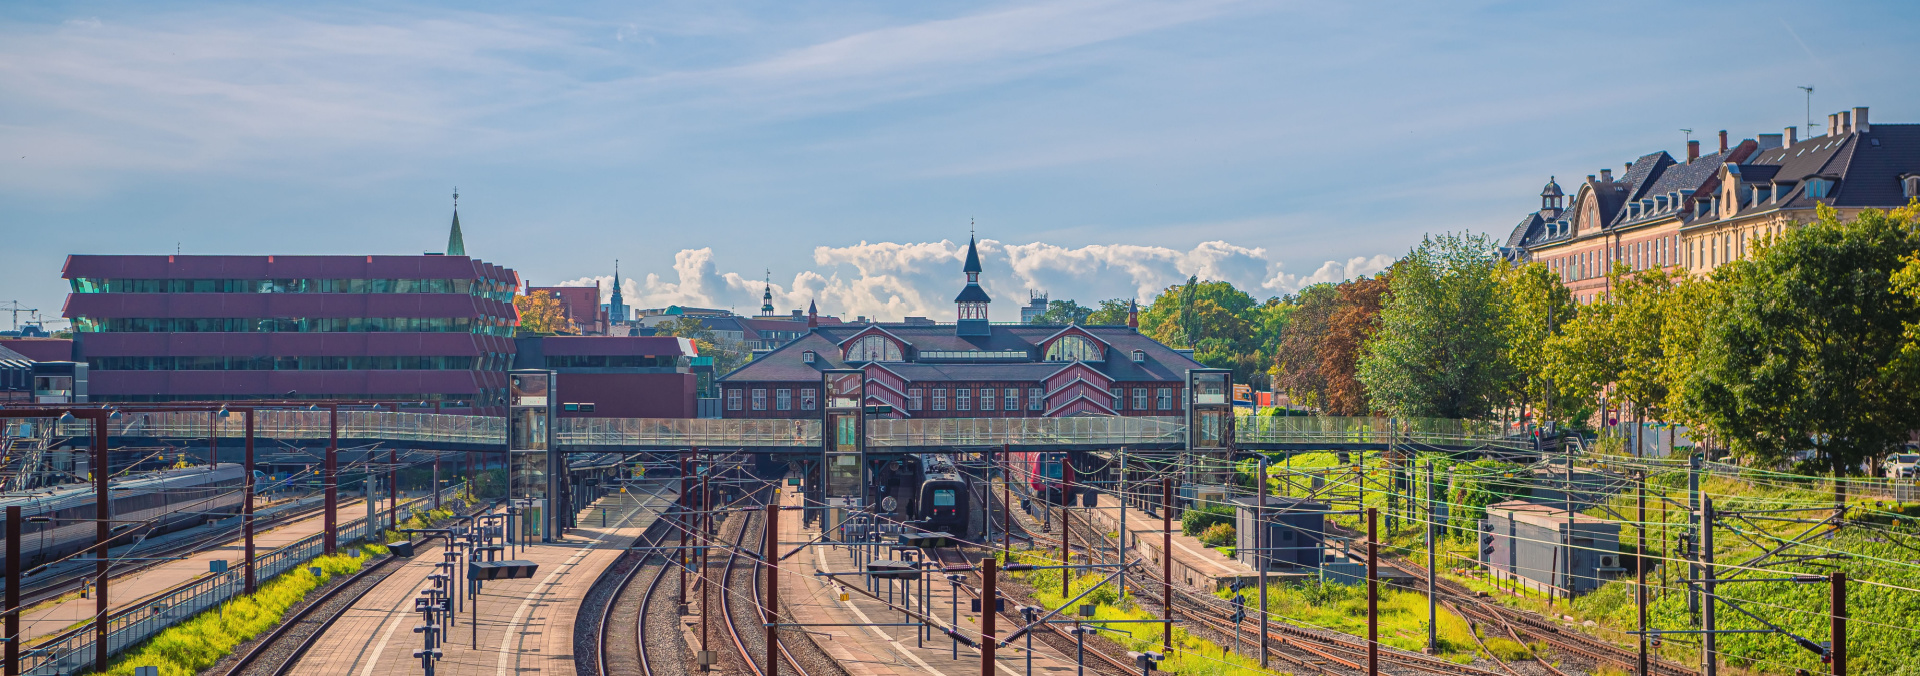 Billede af Østerport Station fra bagsiden.